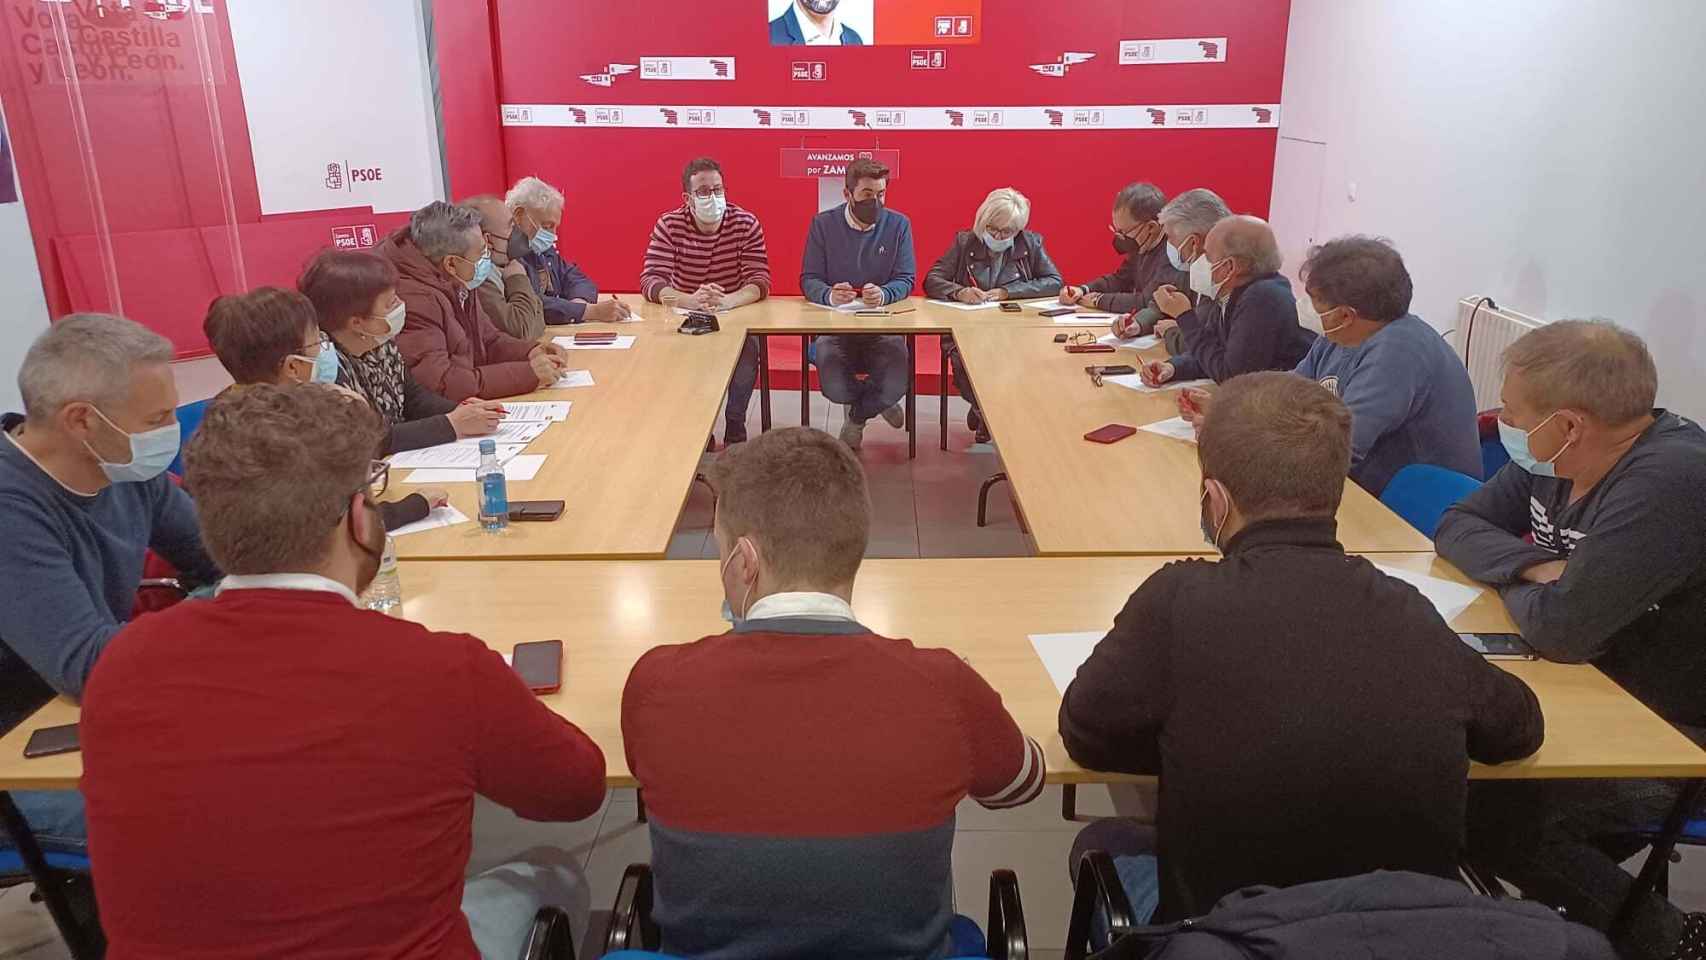 Antidio Fagúndez, Mª Cruz Hernández e Inmaculada García Rioja en la reunión de la Comisión Ejecutiva Provincial en la sede del PSOE de Zamora